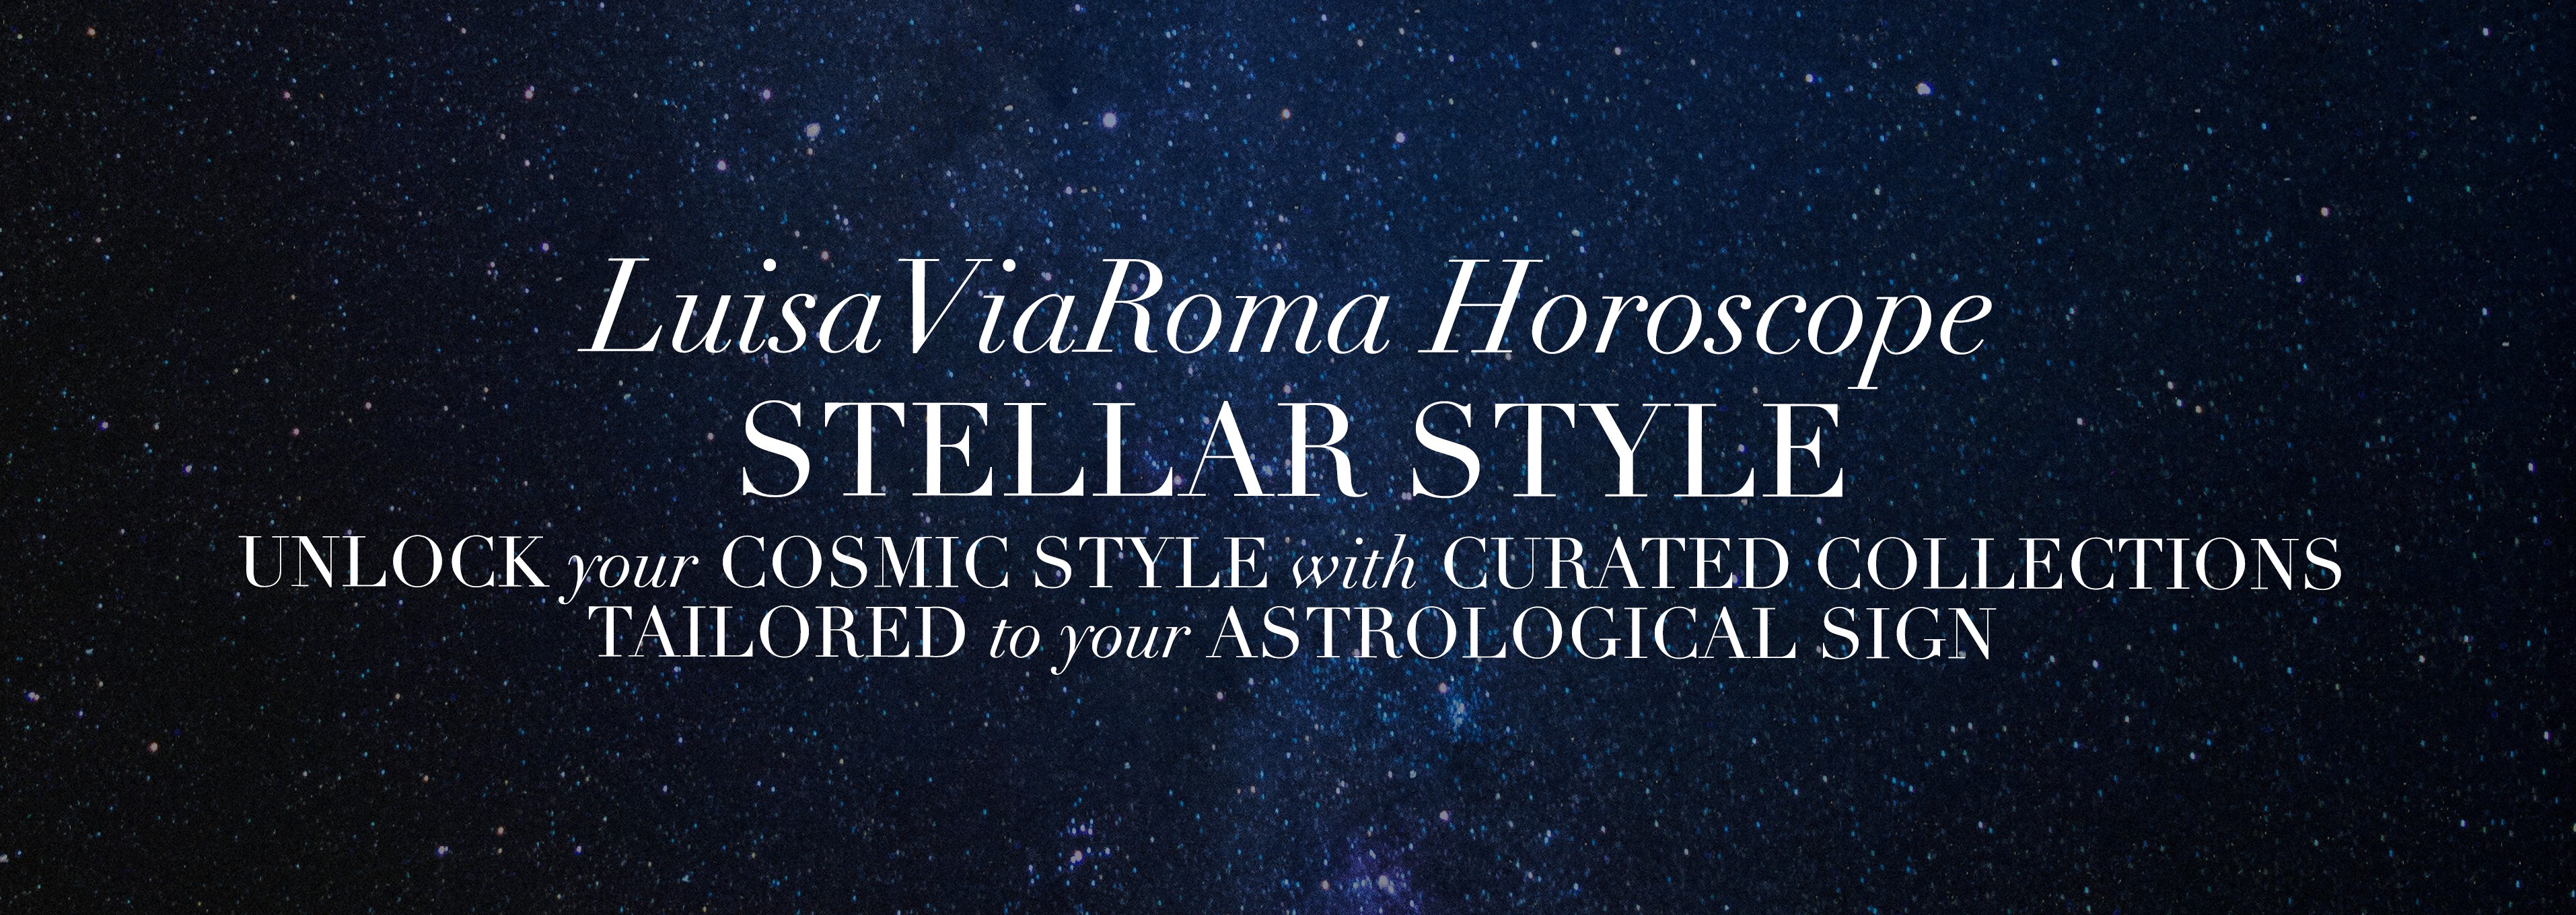 LuisaViaRoma Horoscope: 패션을 바라보는 별자리